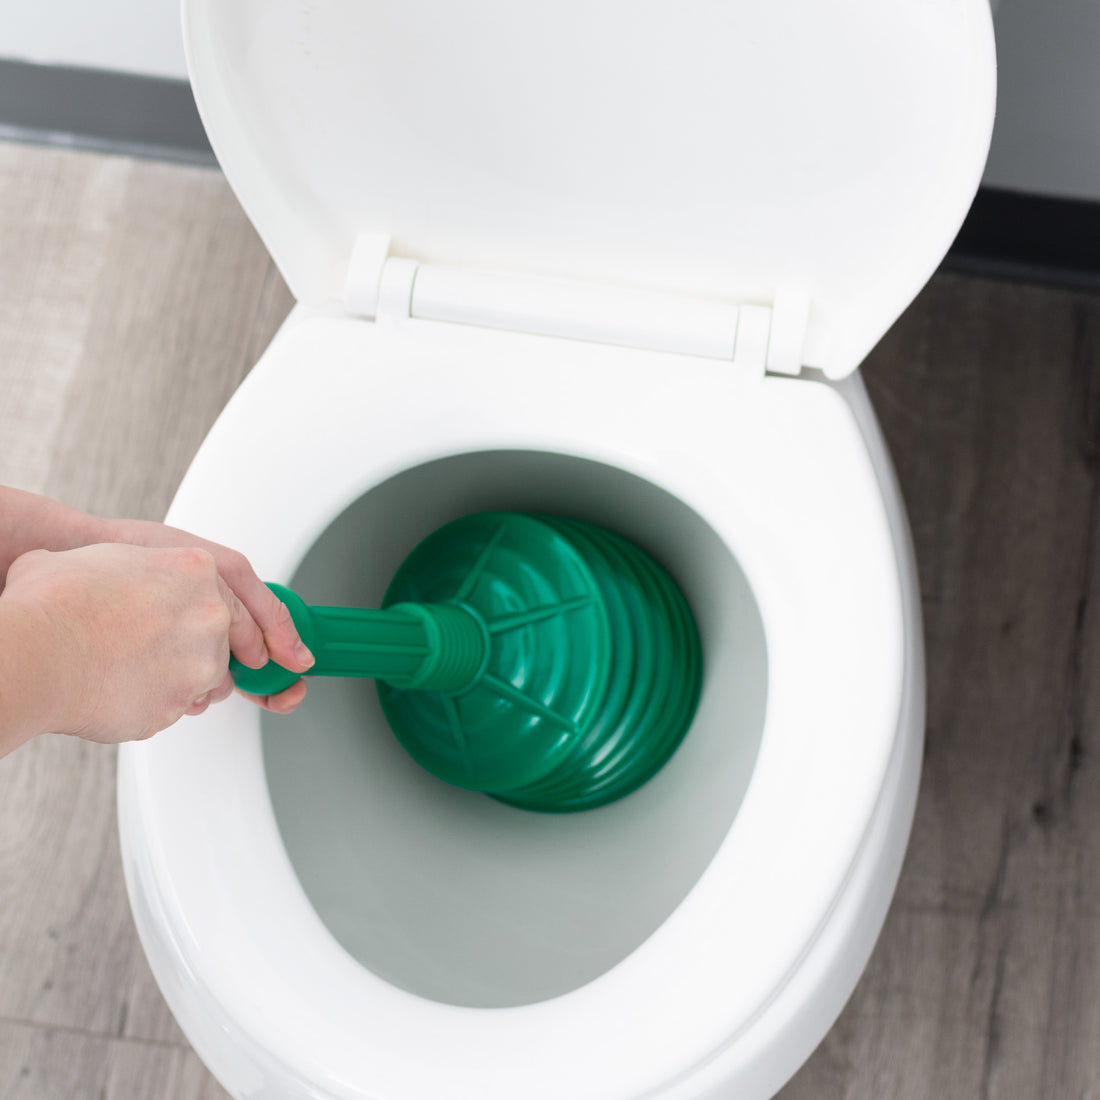 Antimicrobial Bellows Accordion Toilet Plunger with Black Storage Tray (Green) - Utility sinks vanites Tehila